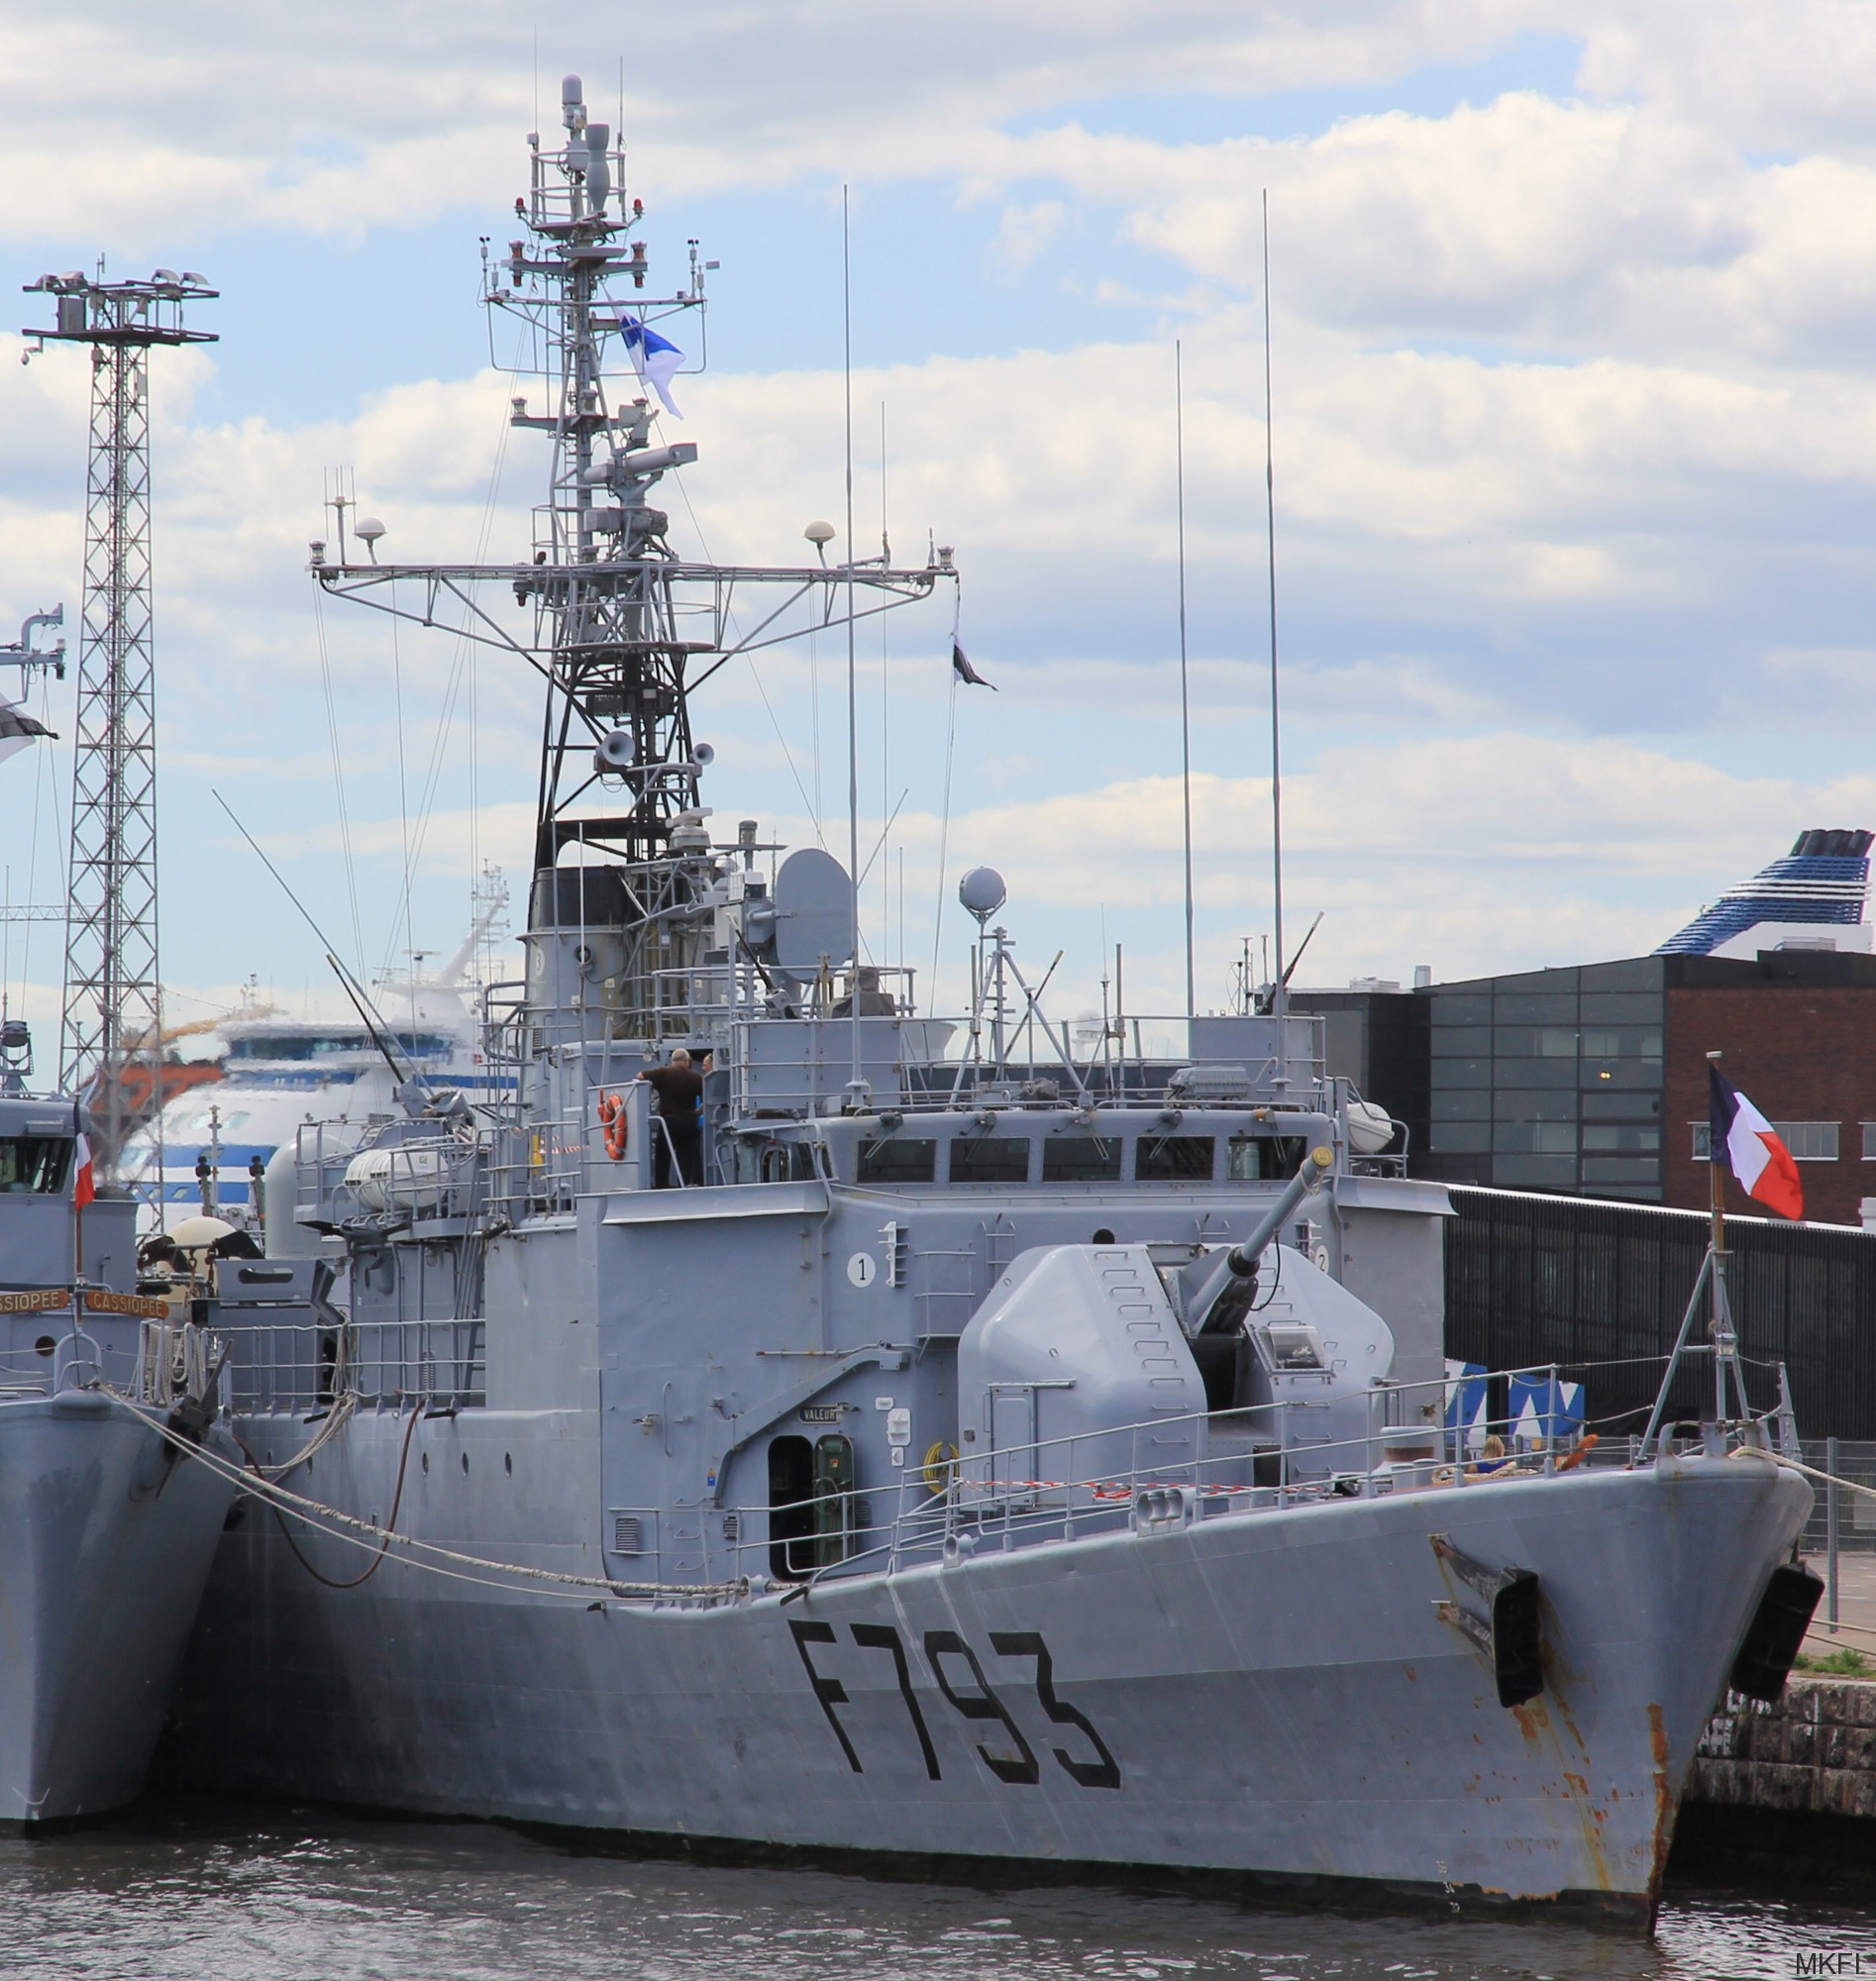 f-793 fs commandant blaison d'estienne d'orves class corvette type a69 aviso french navy marine nationale 08